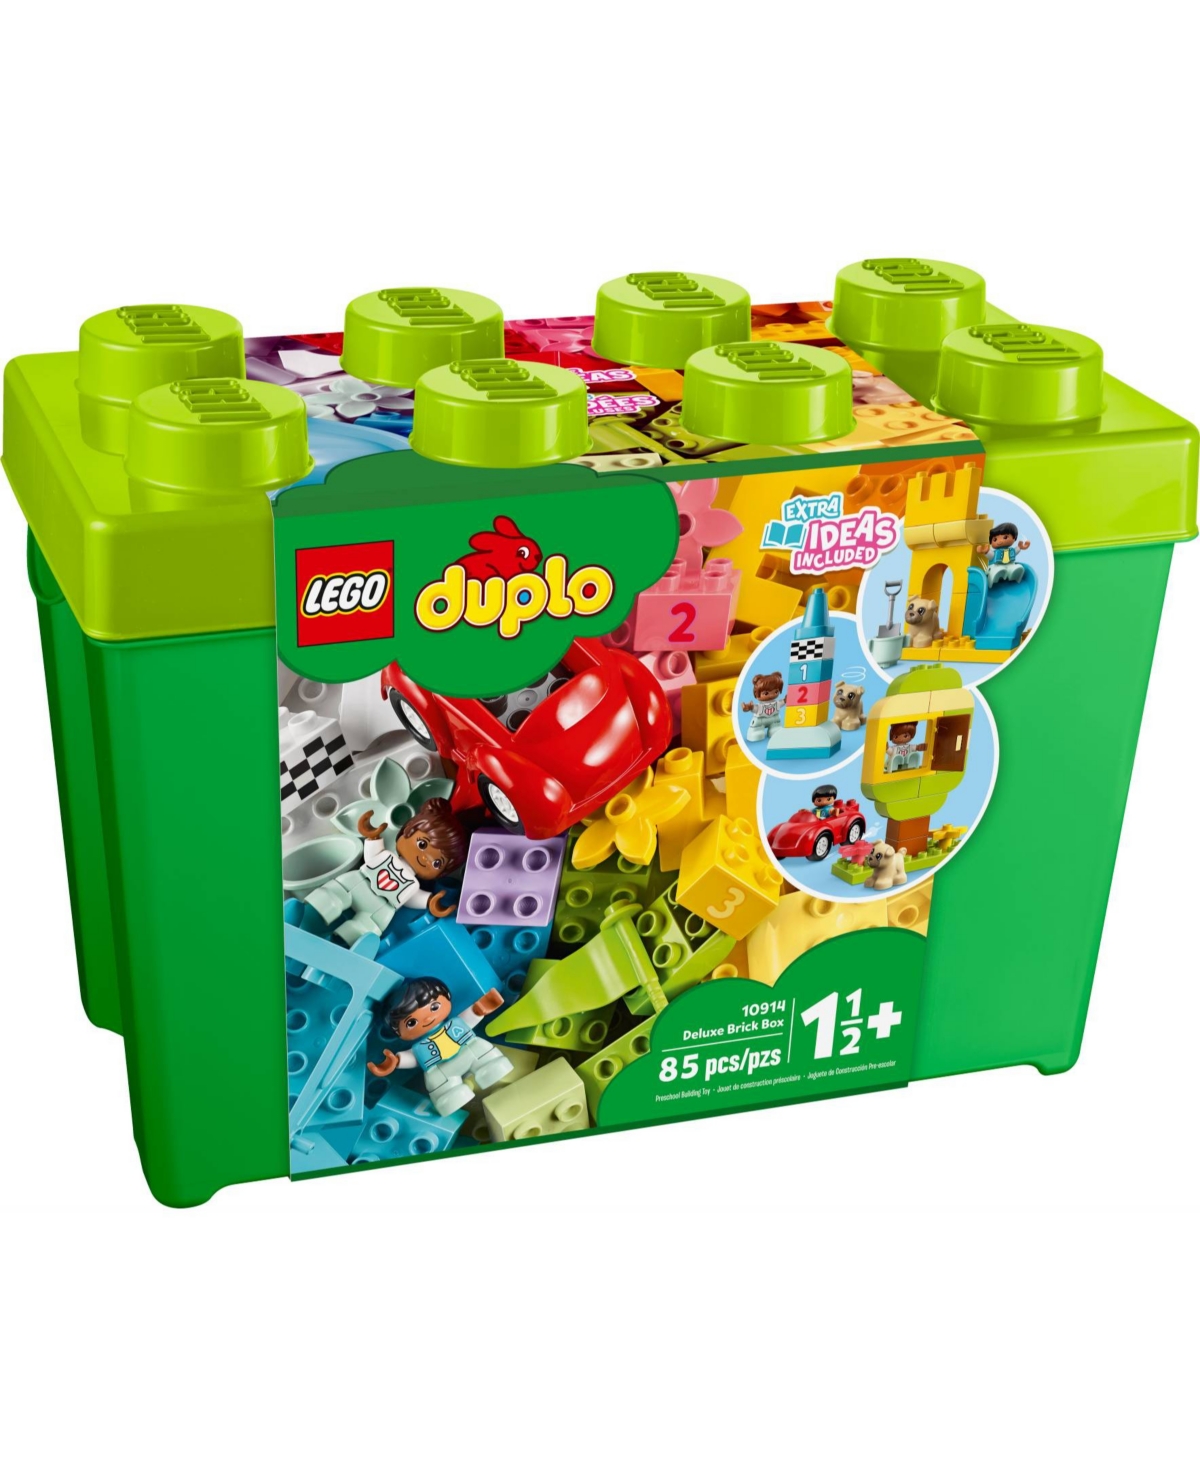 Shop Lego Duplo 10914 Deluxe Brick Box Toy Building Set In No Color